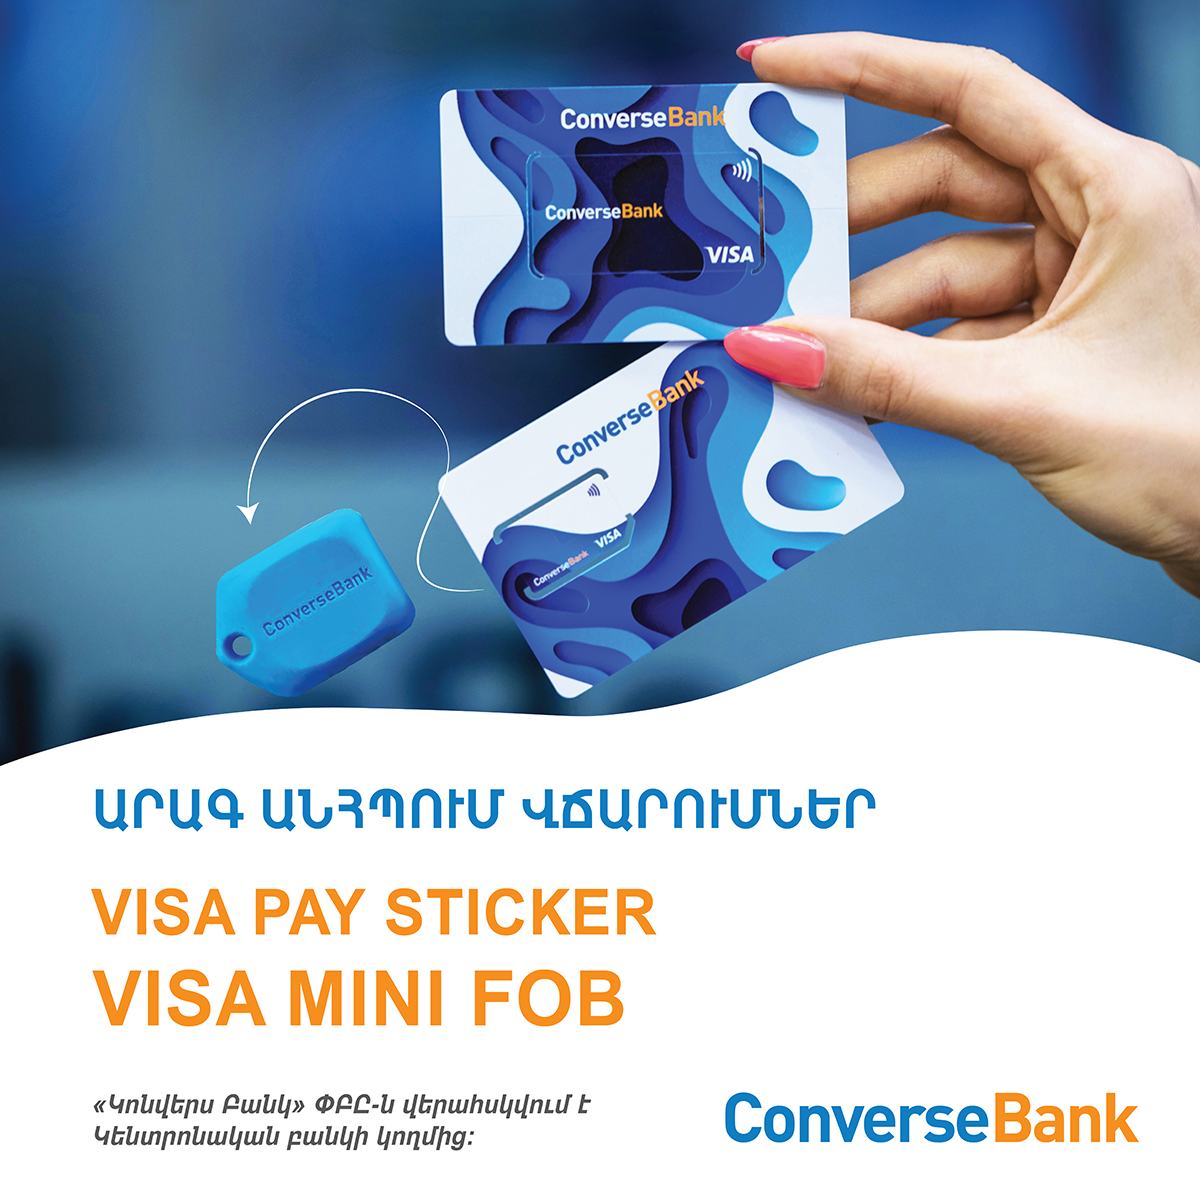 Visa Mini Fob՝ Կոնվերս Բանկի հետաքրքիր առաջարկը հաճախորդներին